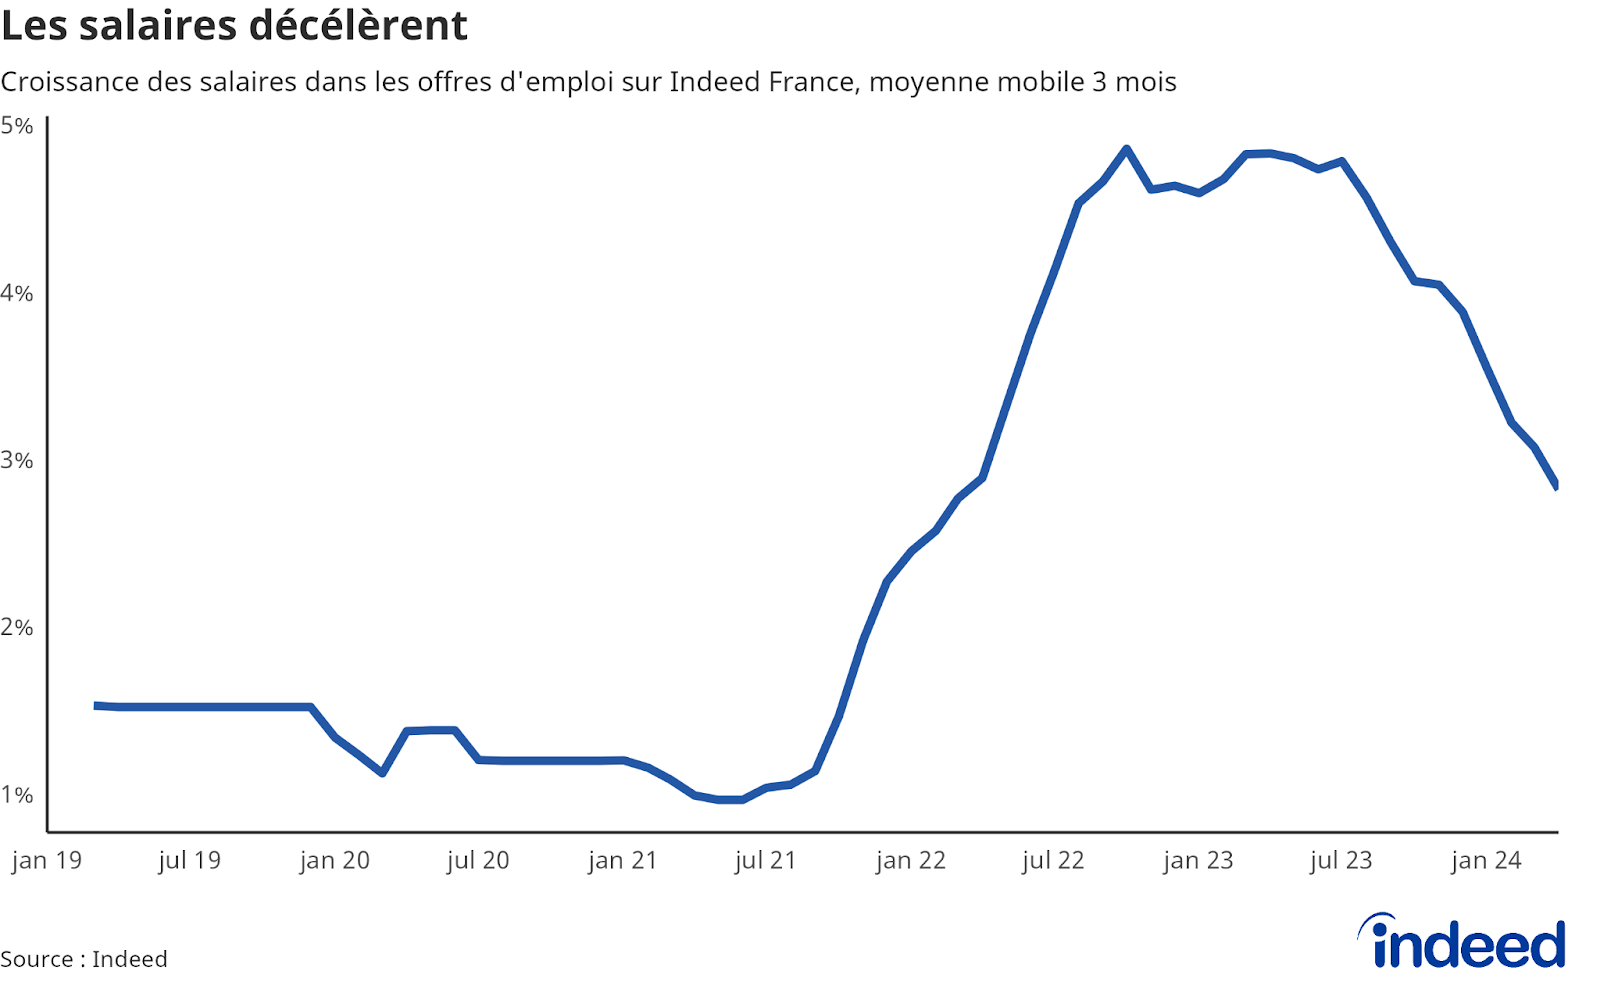 Diagramme linéaire montrant l’évolution sur 1 an des salaires dans les offres d’emploi entre le mars 2019 et avril 2024 sur Indeed pour la France, en moyenne mobile 3 mois. Les données proviennent d’Indeed.